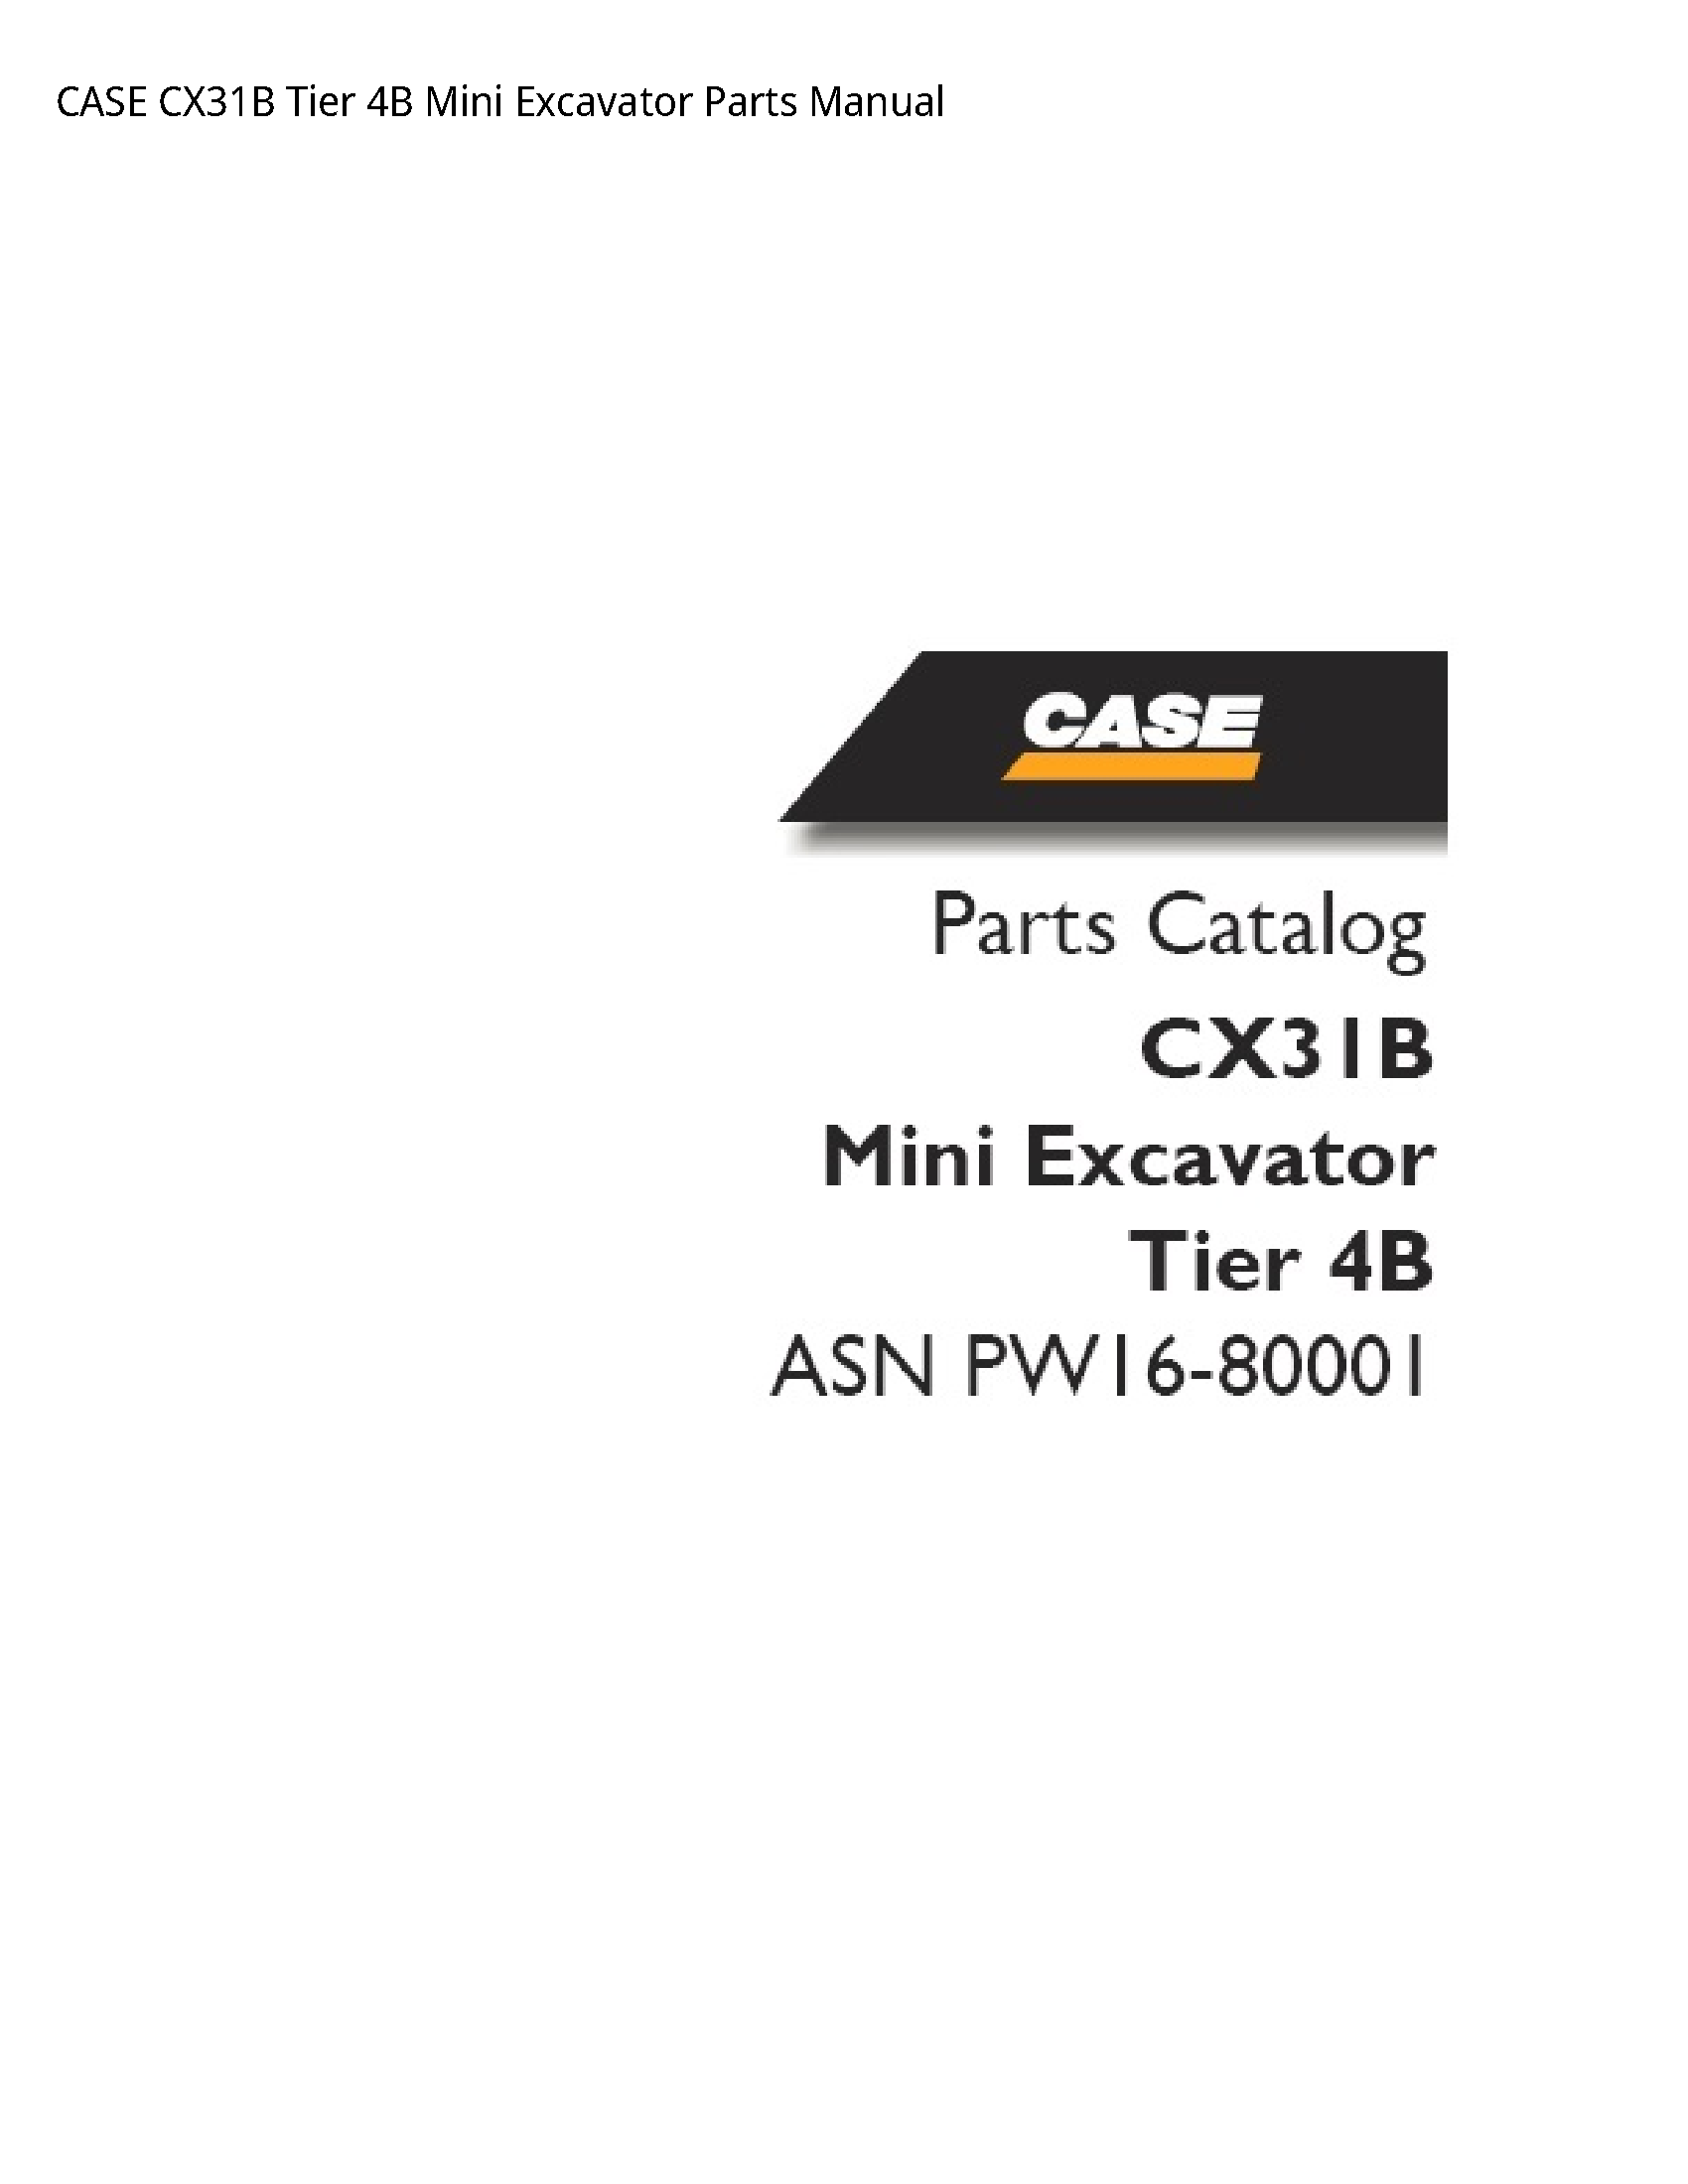 Case/Case IH CX31B Tier Mini Excavator Parts manual